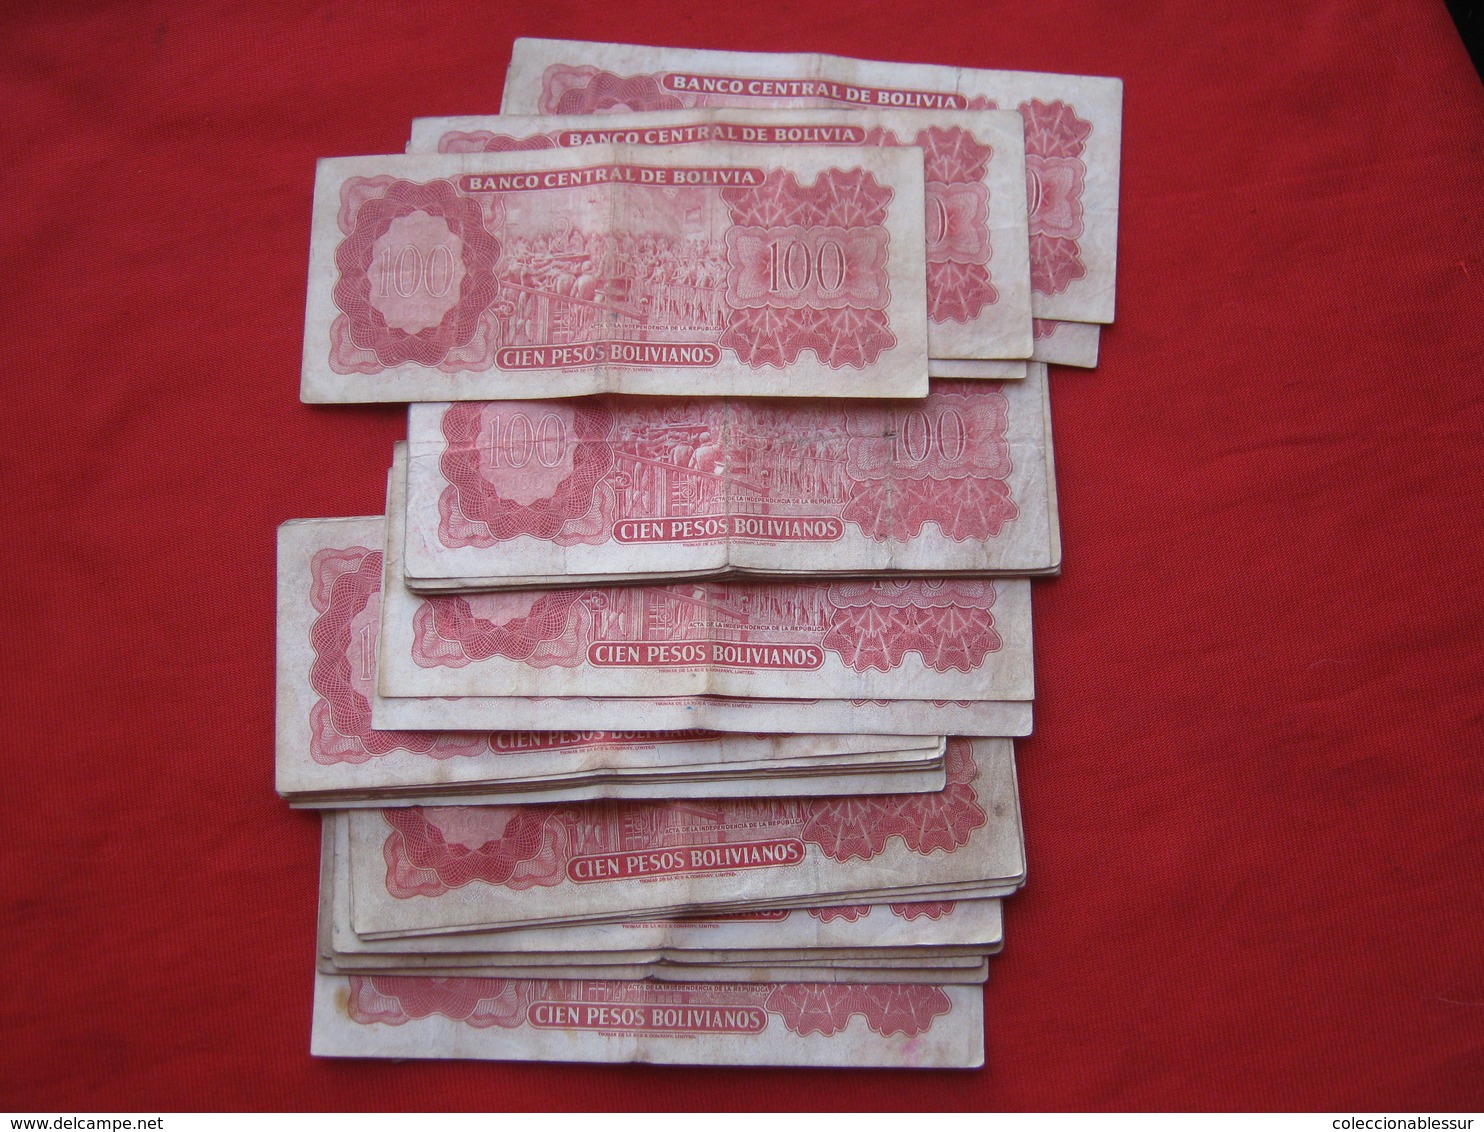 Bolivia Banknotes Lot 200+